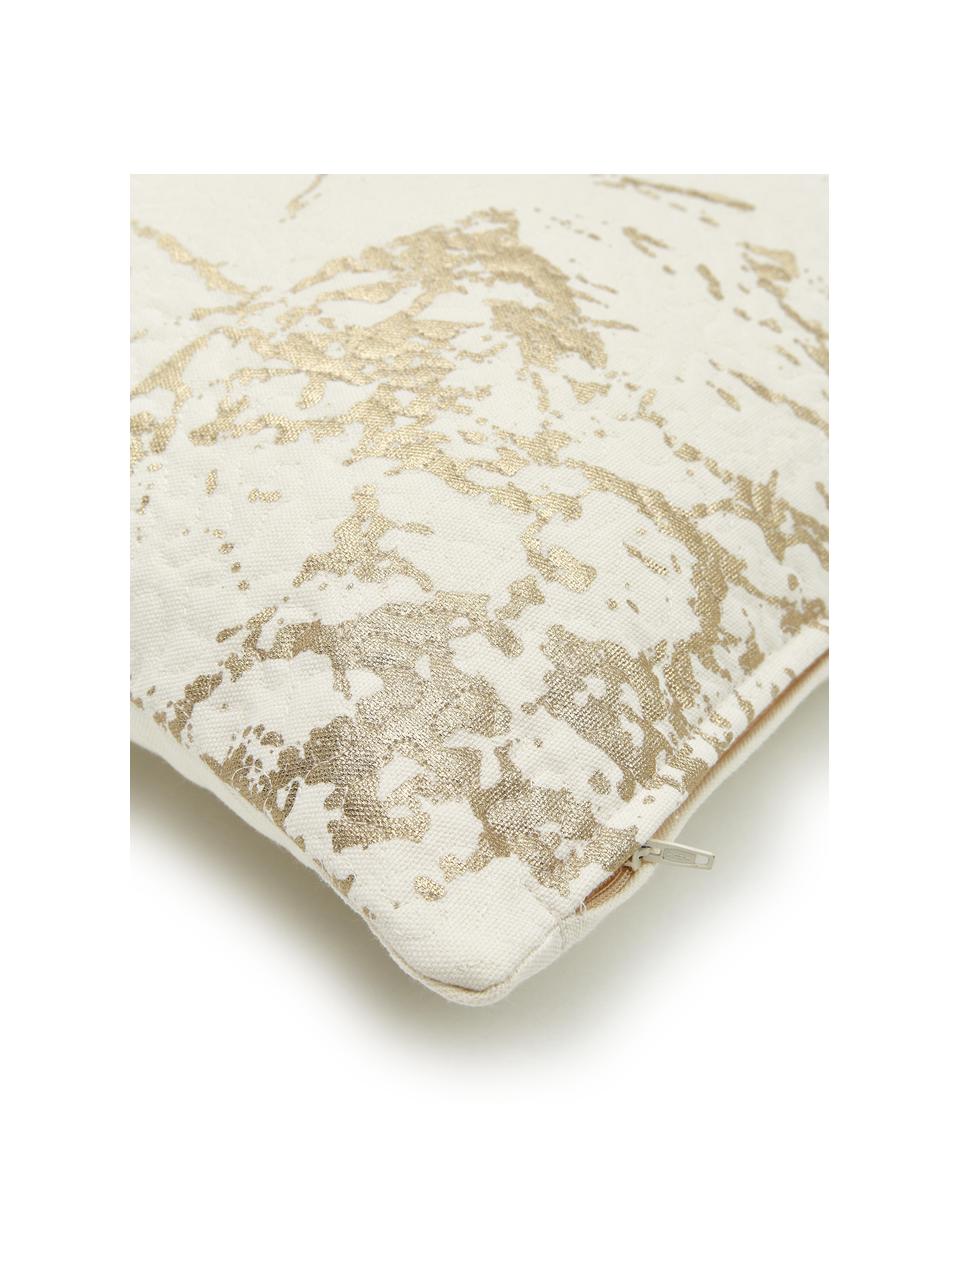 Kissen Quilted mit goldenen Details, mit Inlett, Bezug: 100% Baumwolle, Gebrochenes Weiss, Goldfarben, 45 x 45 cm